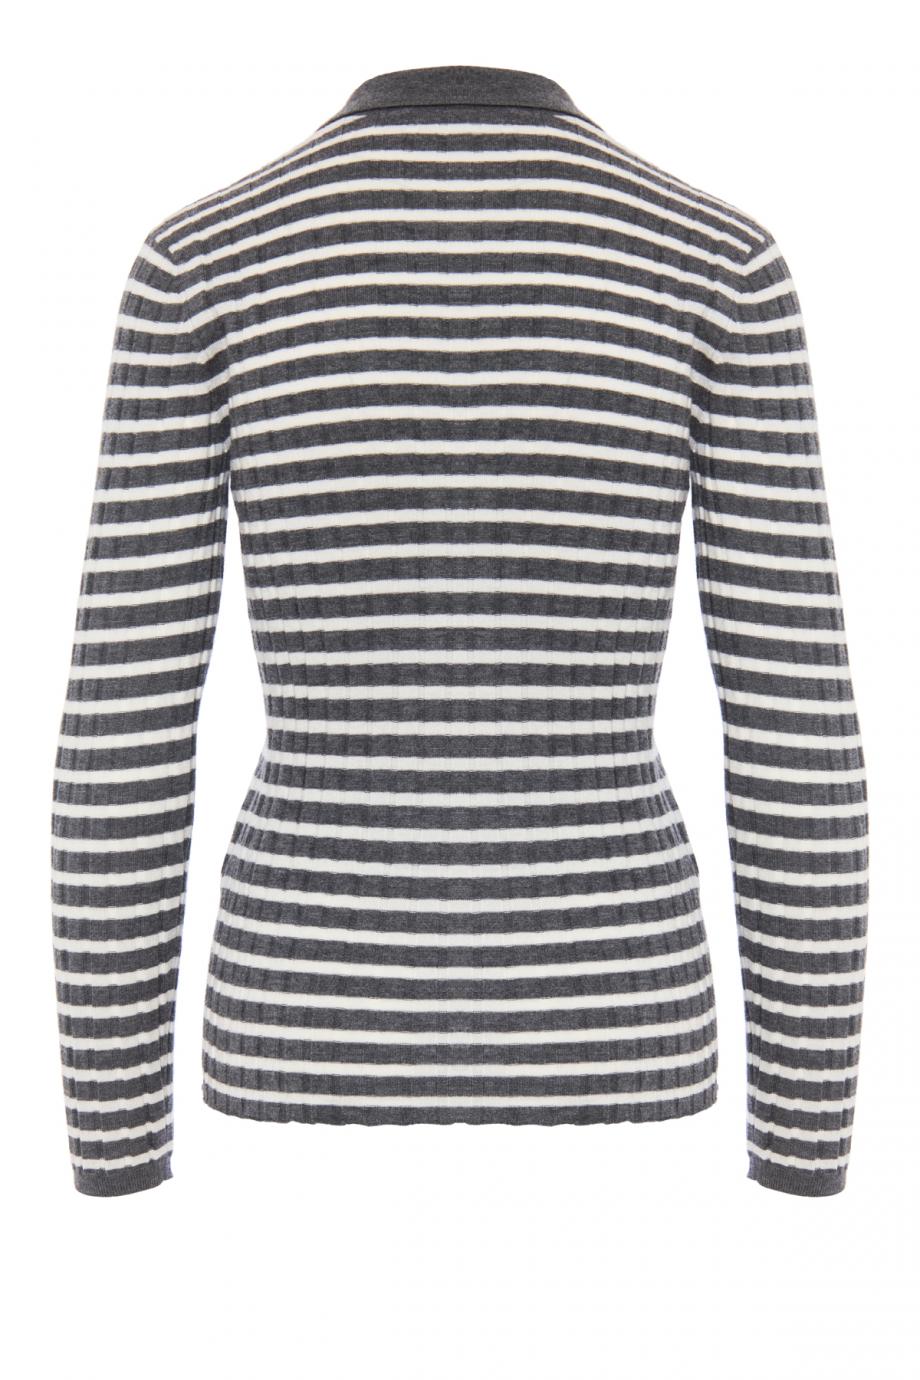 Faya striped knitter cashmere sweater 